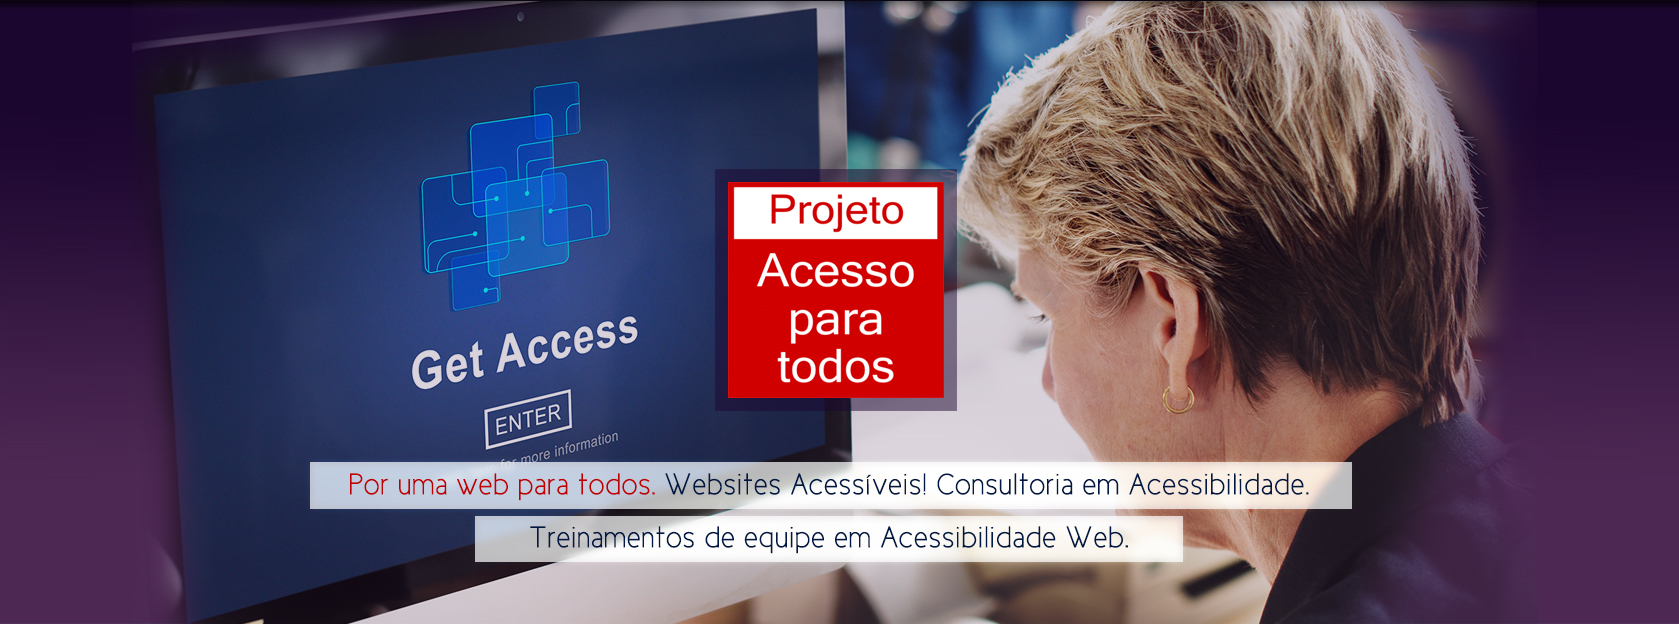 Acesso para Todos: Criação de Websites Acessíveis, Consultoria e Treinamento em Acessibilidade Web.